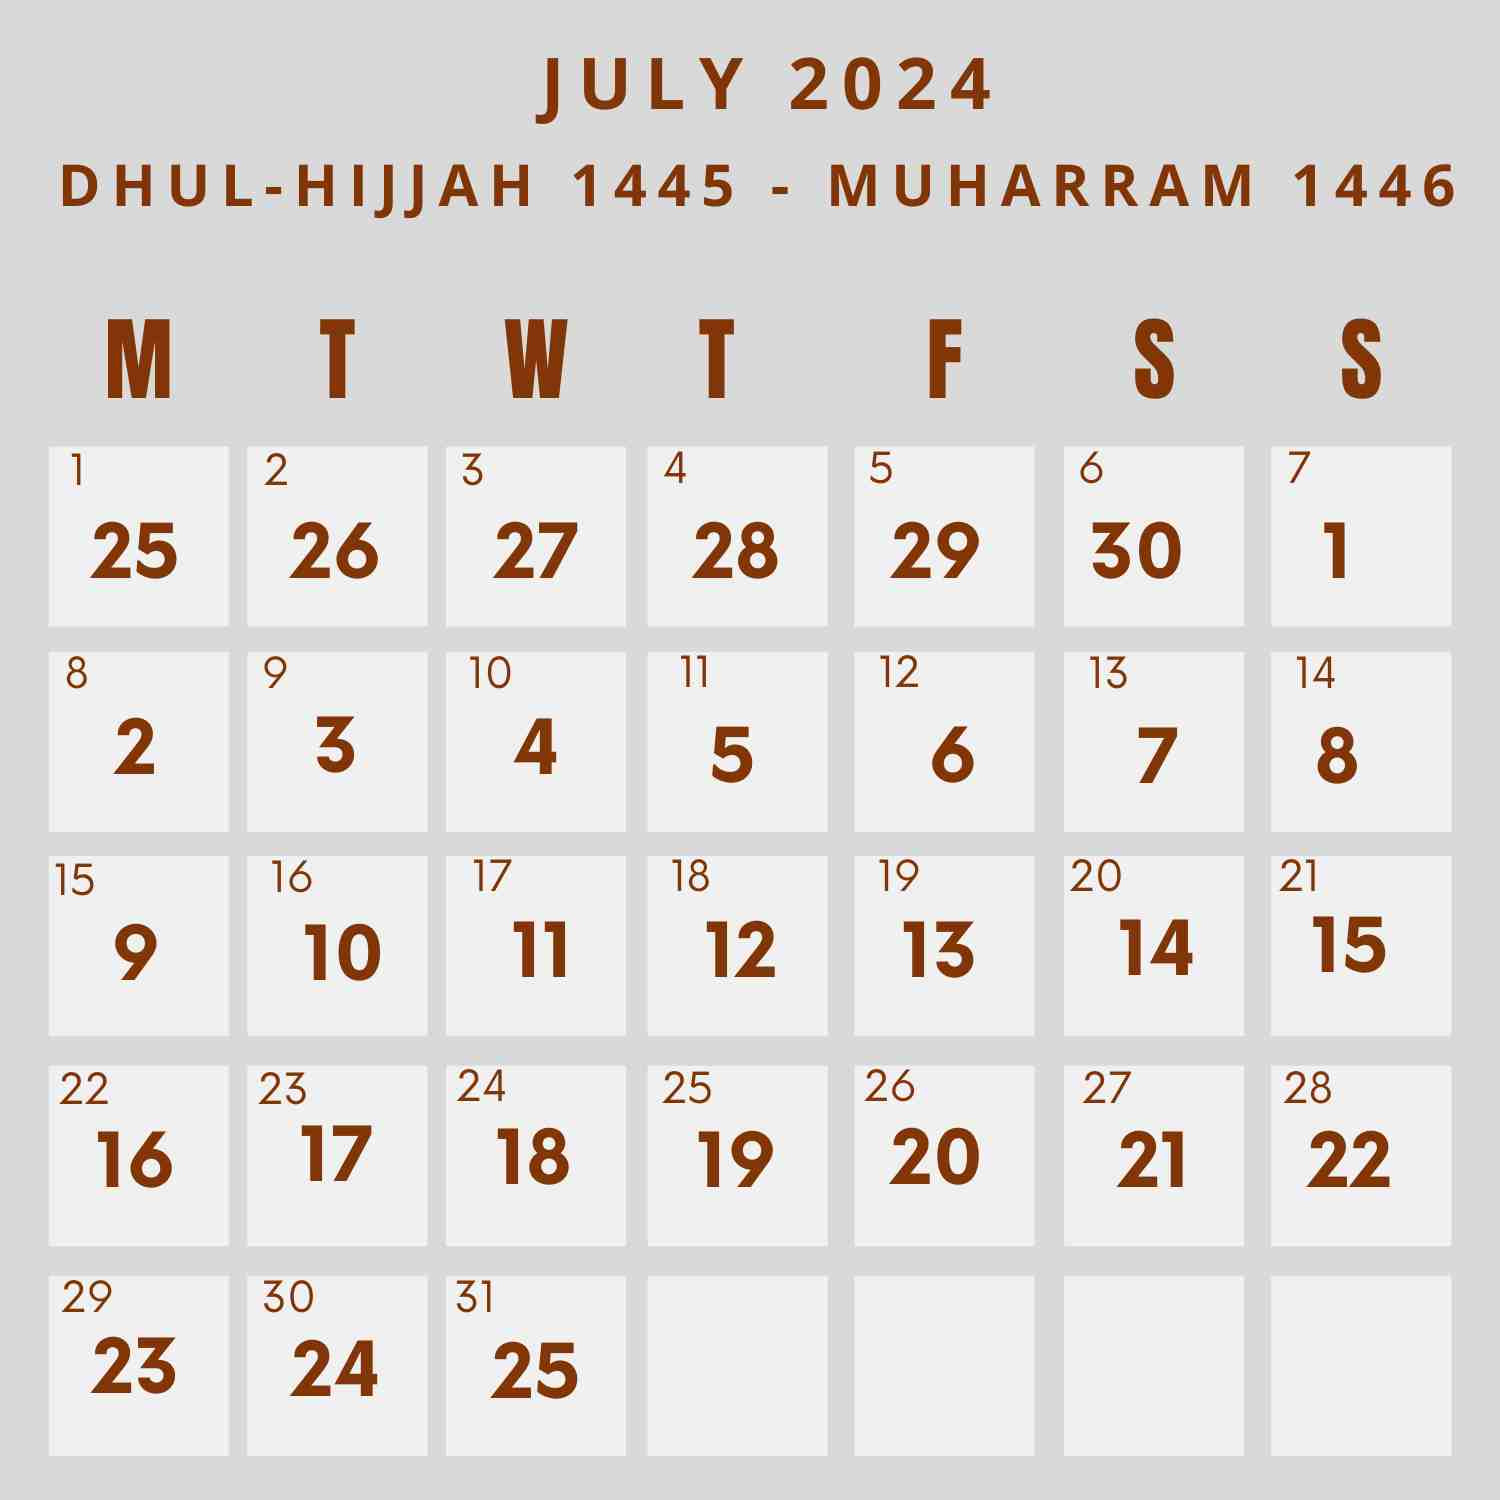 Islamic Calendar 2024 - Khwajadarbar within 13 July 2024 in Islamic Calendar